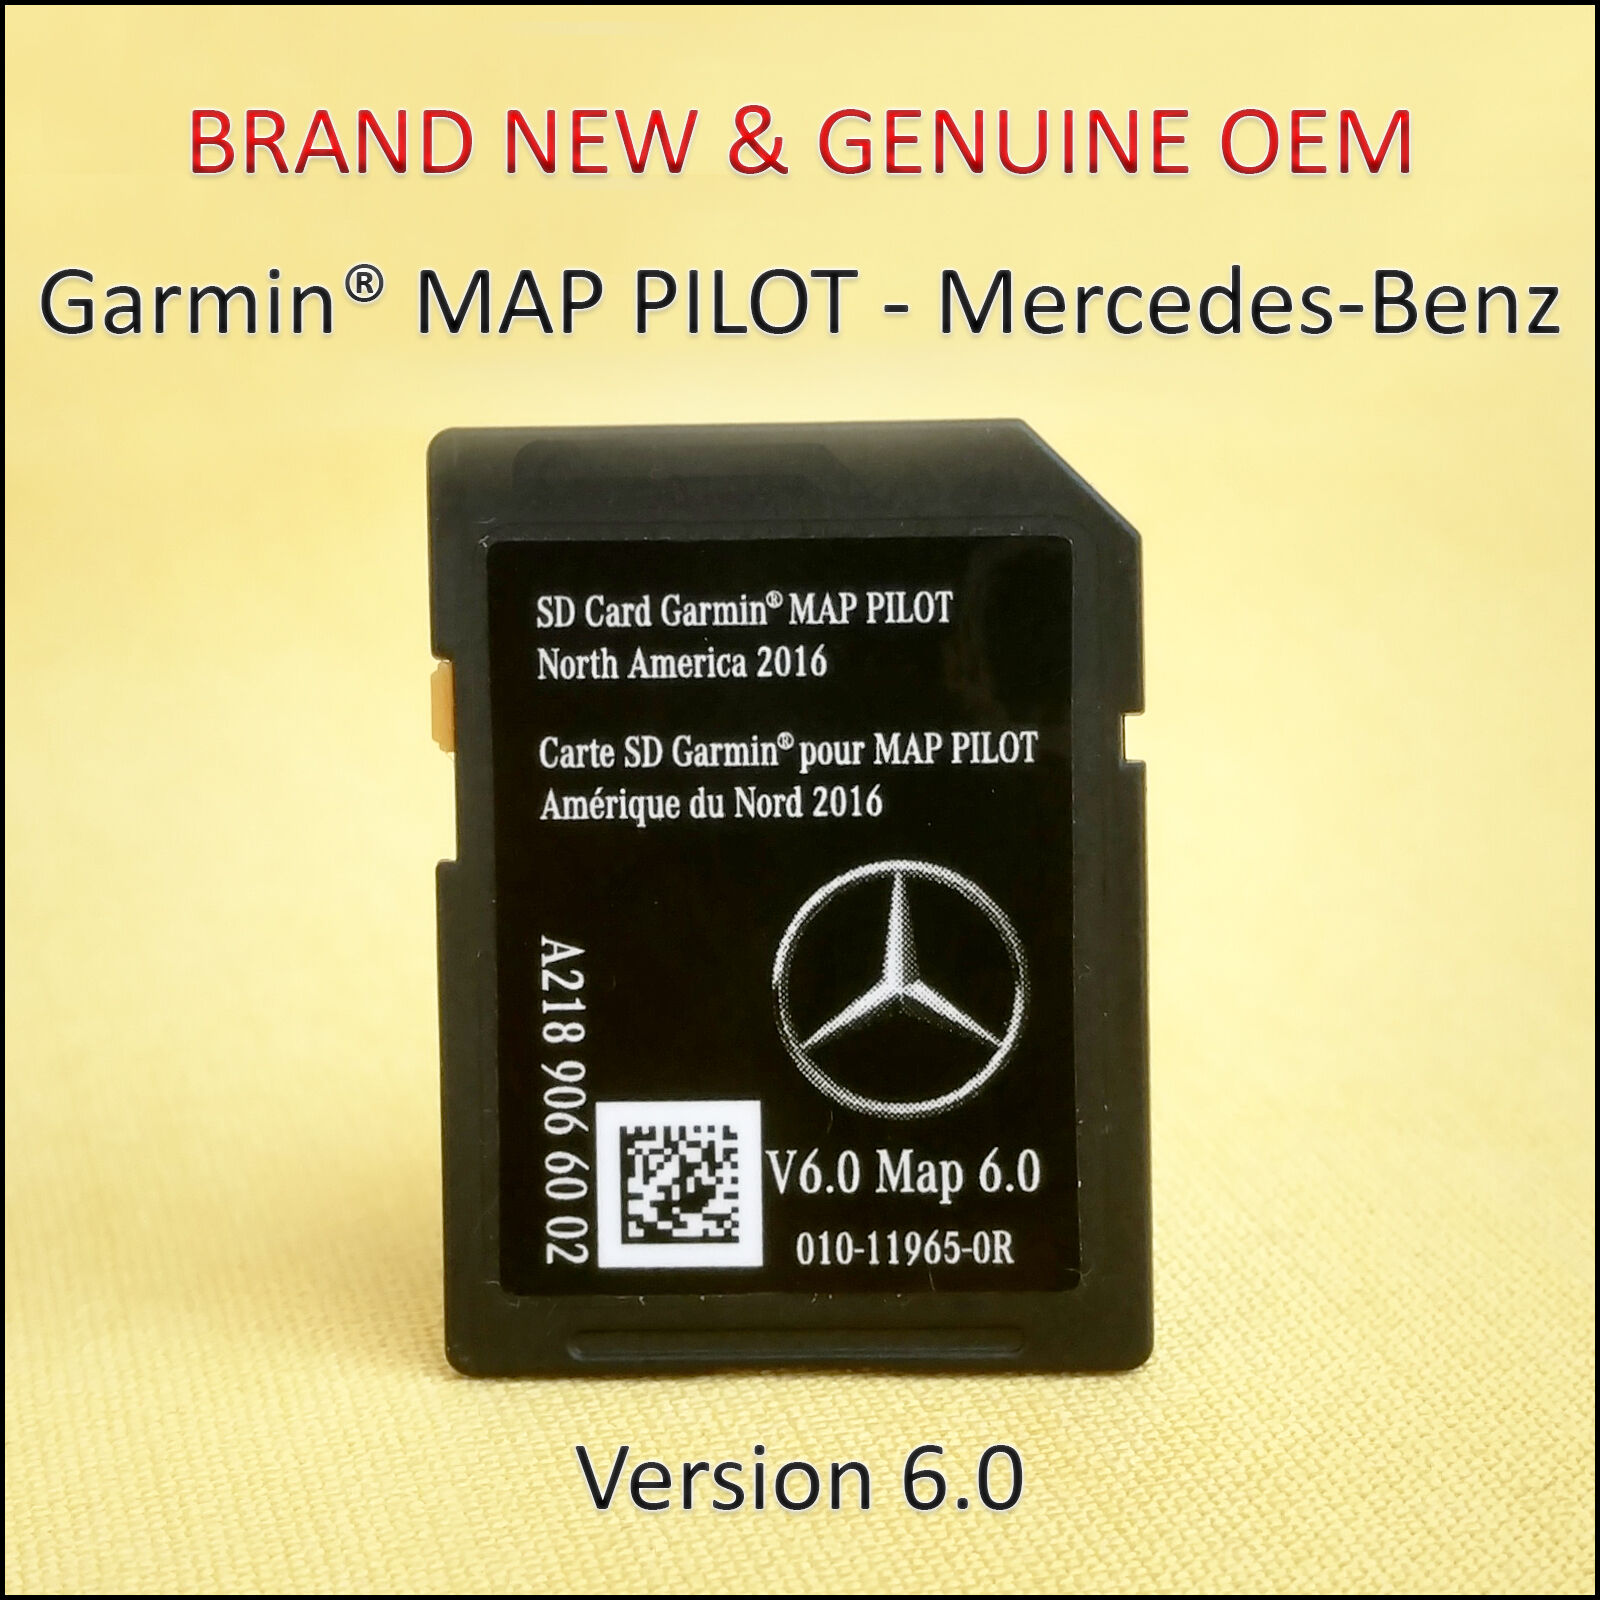  Mercedes-Benz CLA-CLS-GLA-SLC-B-E-Class Navigation SD Card GARMIN Map Pilot OEM